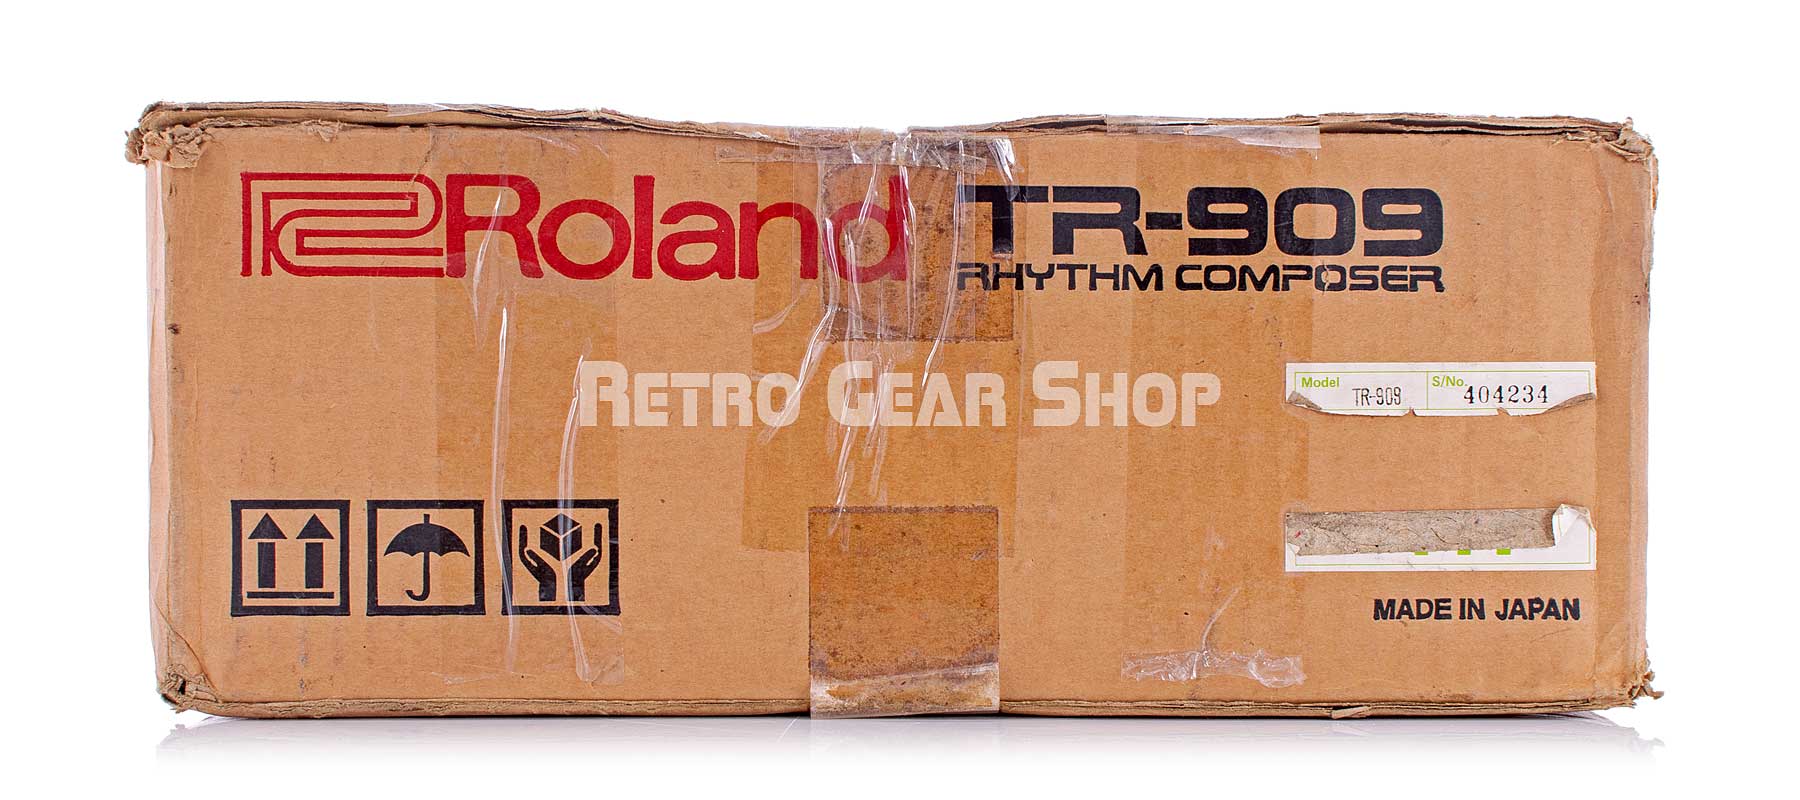 Roland TR-909 + Original Box Front